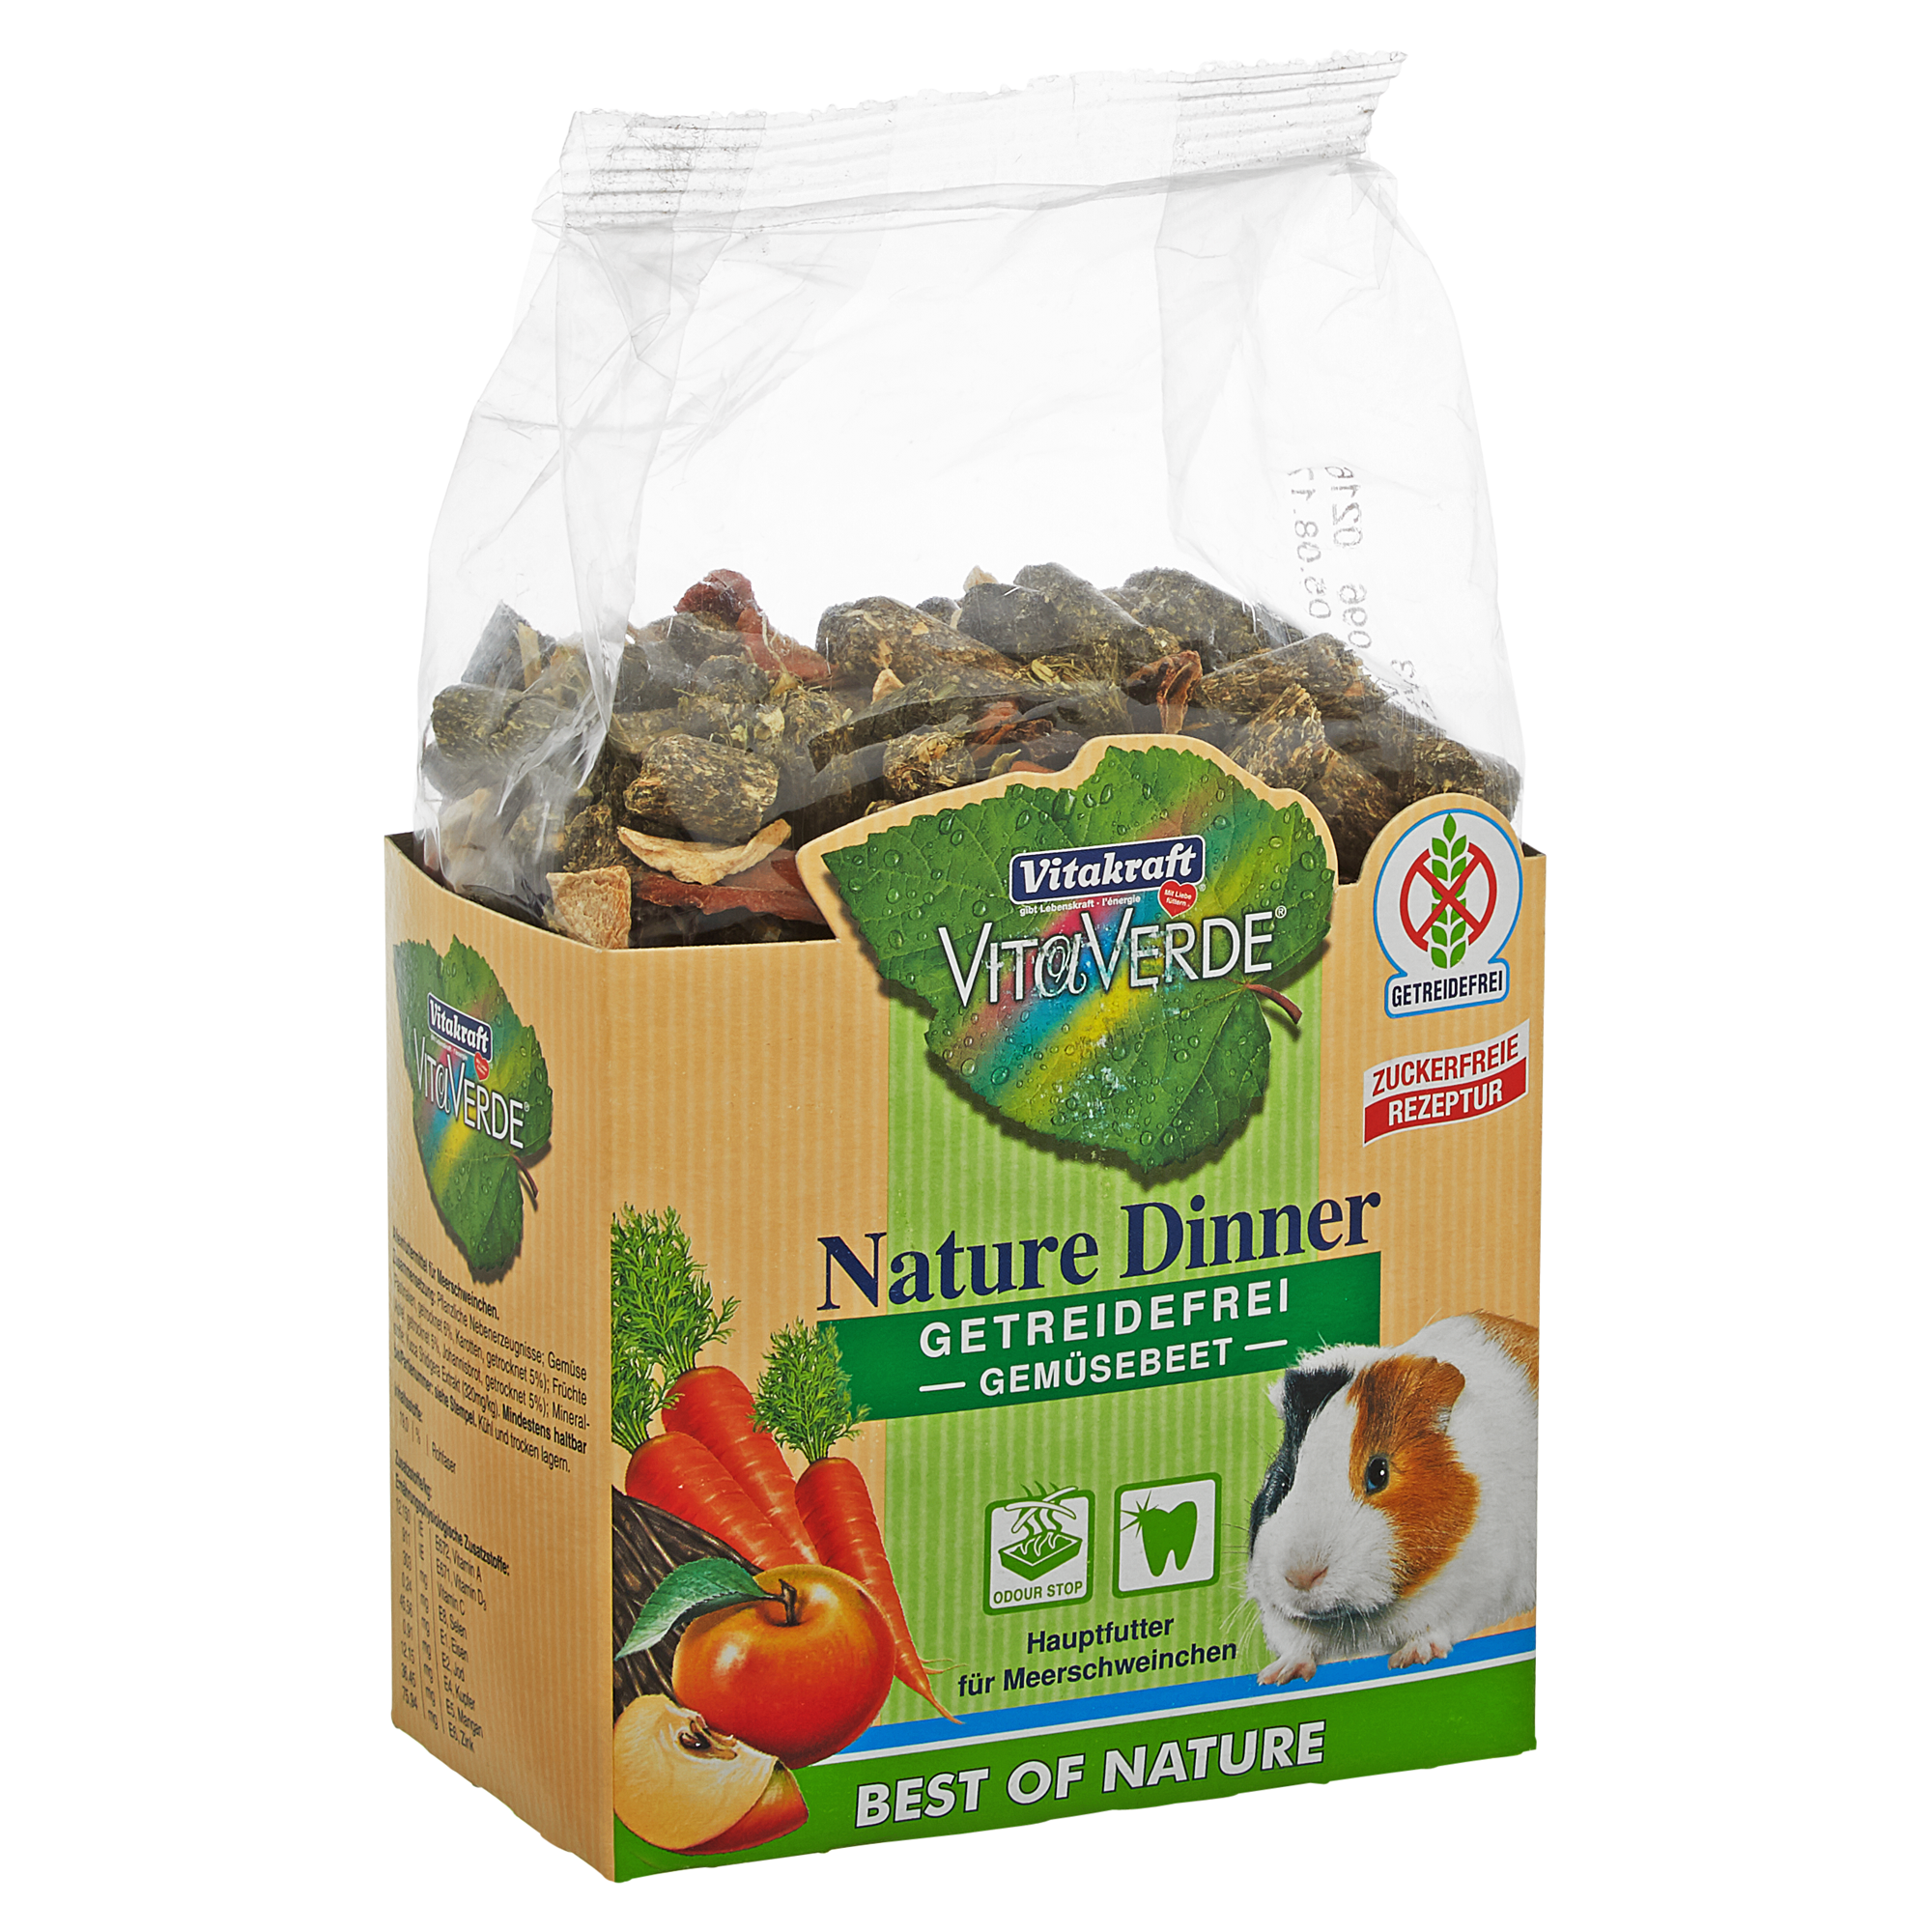 Nagetierfutter "Vita Verde" Nature Dinner Gemüsebeet für Meerschweinchen 600 g + product picture